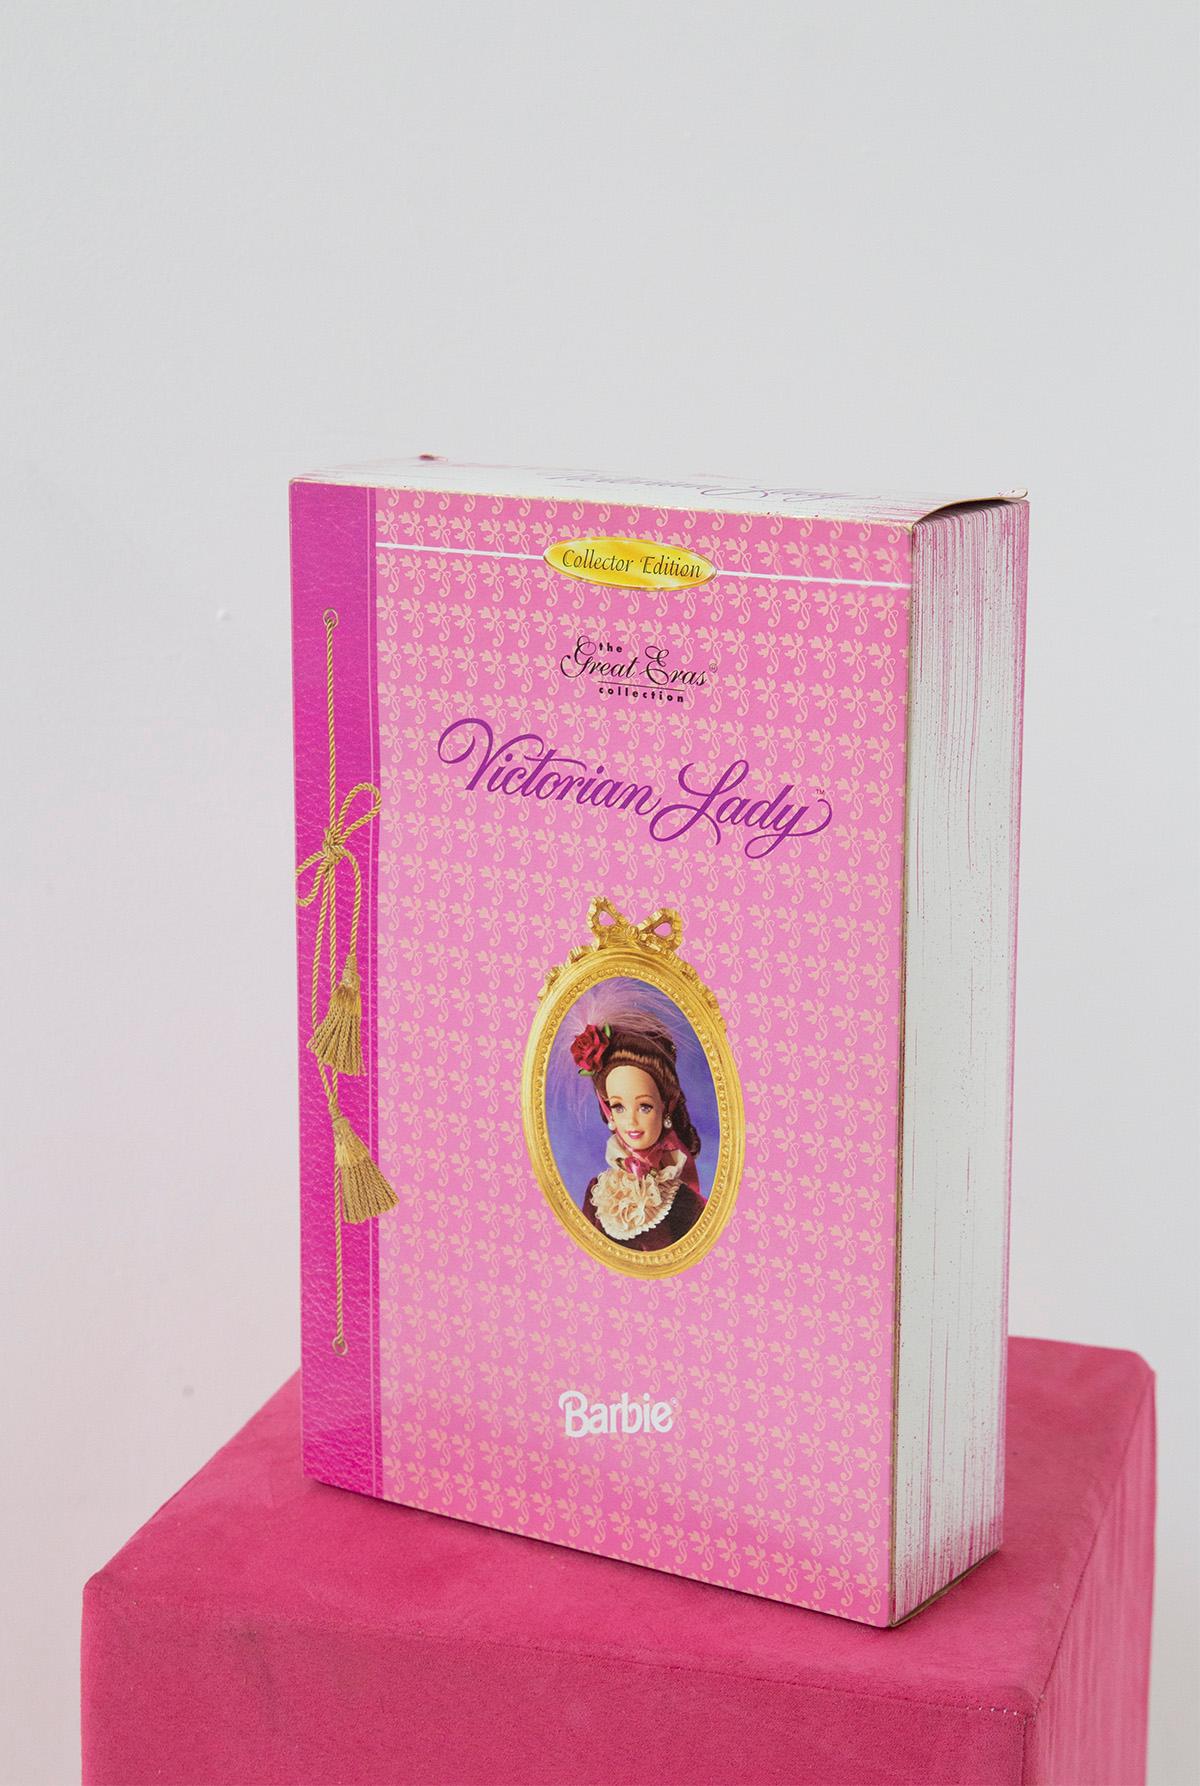 En 1995, une poupée Barbie a émergé des annales de l'histoire comme un témoignage de la grâce et de l'élégance d'une époque révolue. Il s'agit de Victorian Lady, une pièce précieuse de la Great Era Collection de Mattel. Cette Barbie transcende le